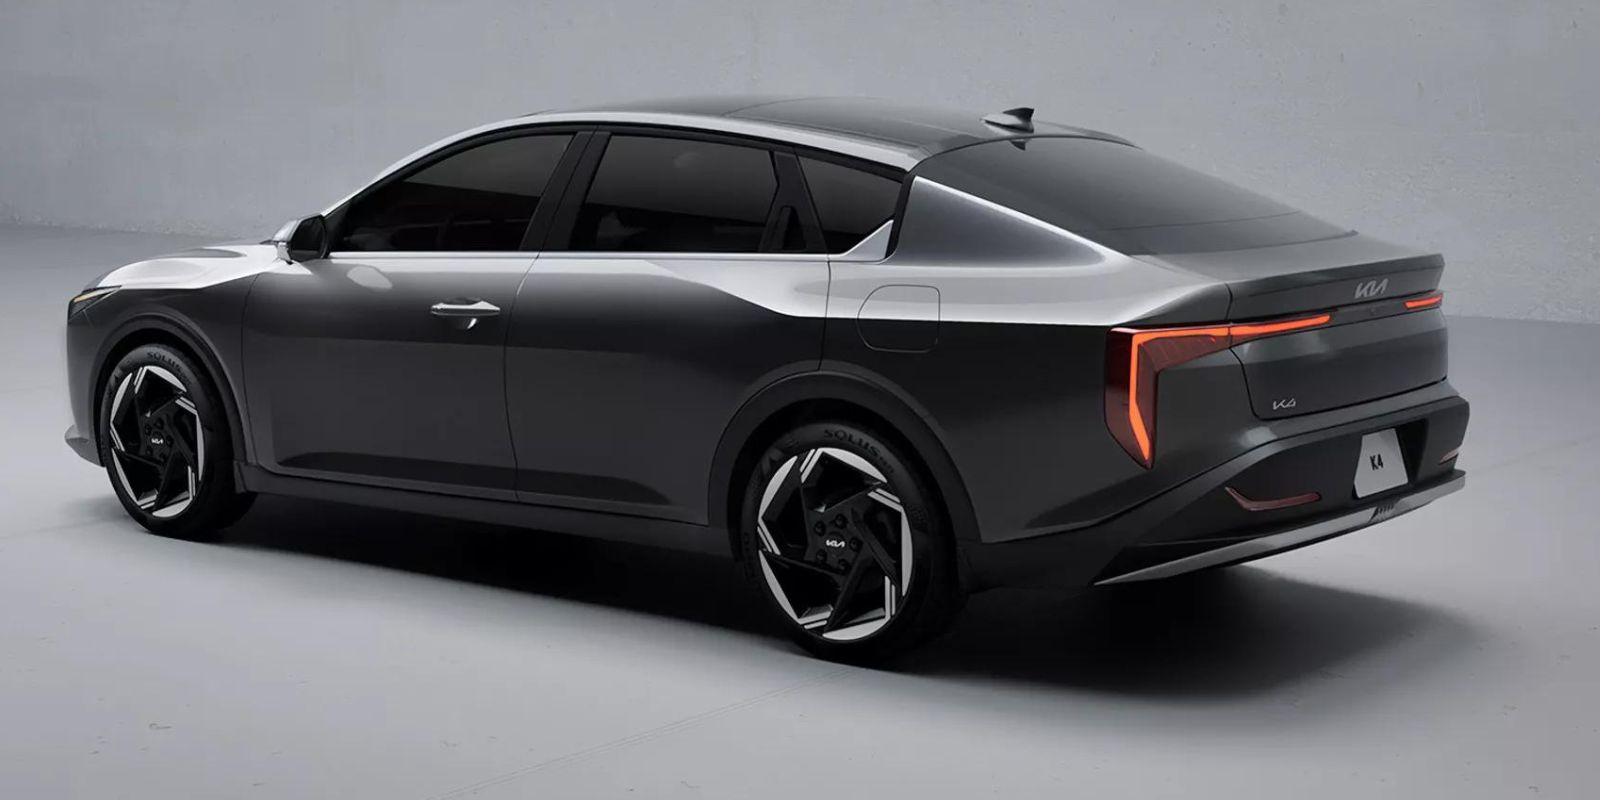 Kia Reveals Their New Kia K4: A Glimpse into the Future of Compact Sedans